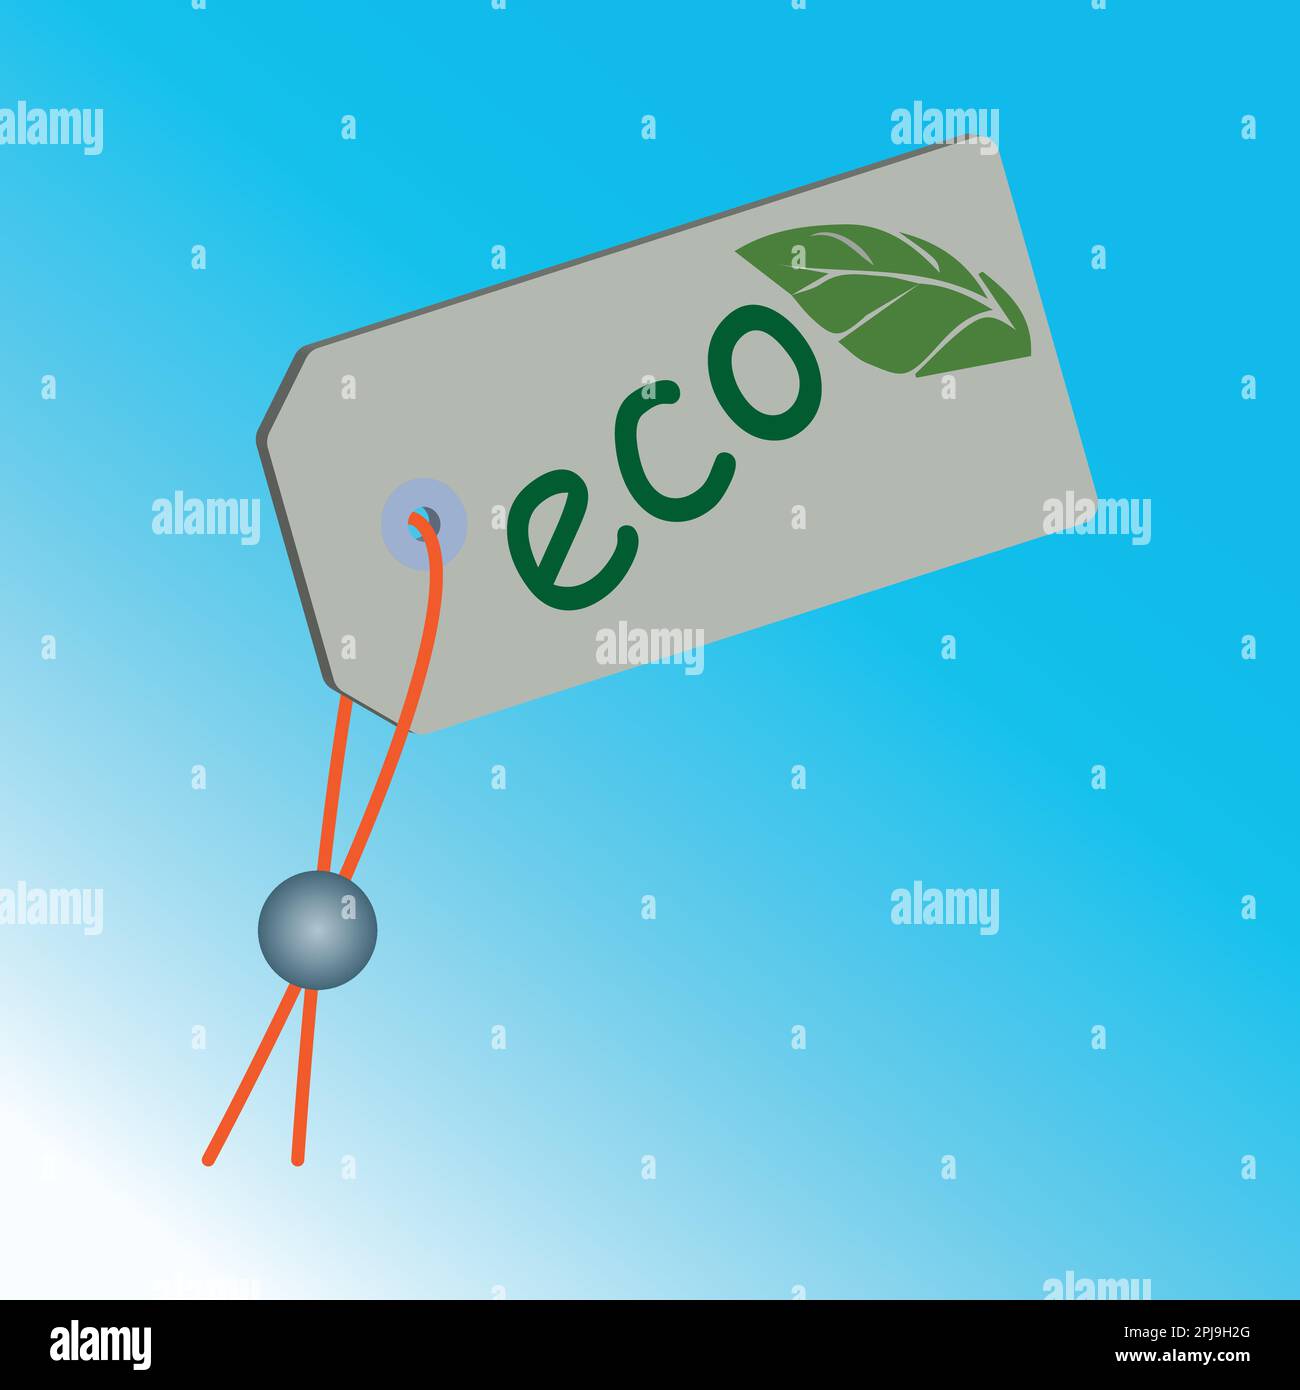 Pappetikett mit dem Text eco und einem grünen Blatt darauf Stock Vektor